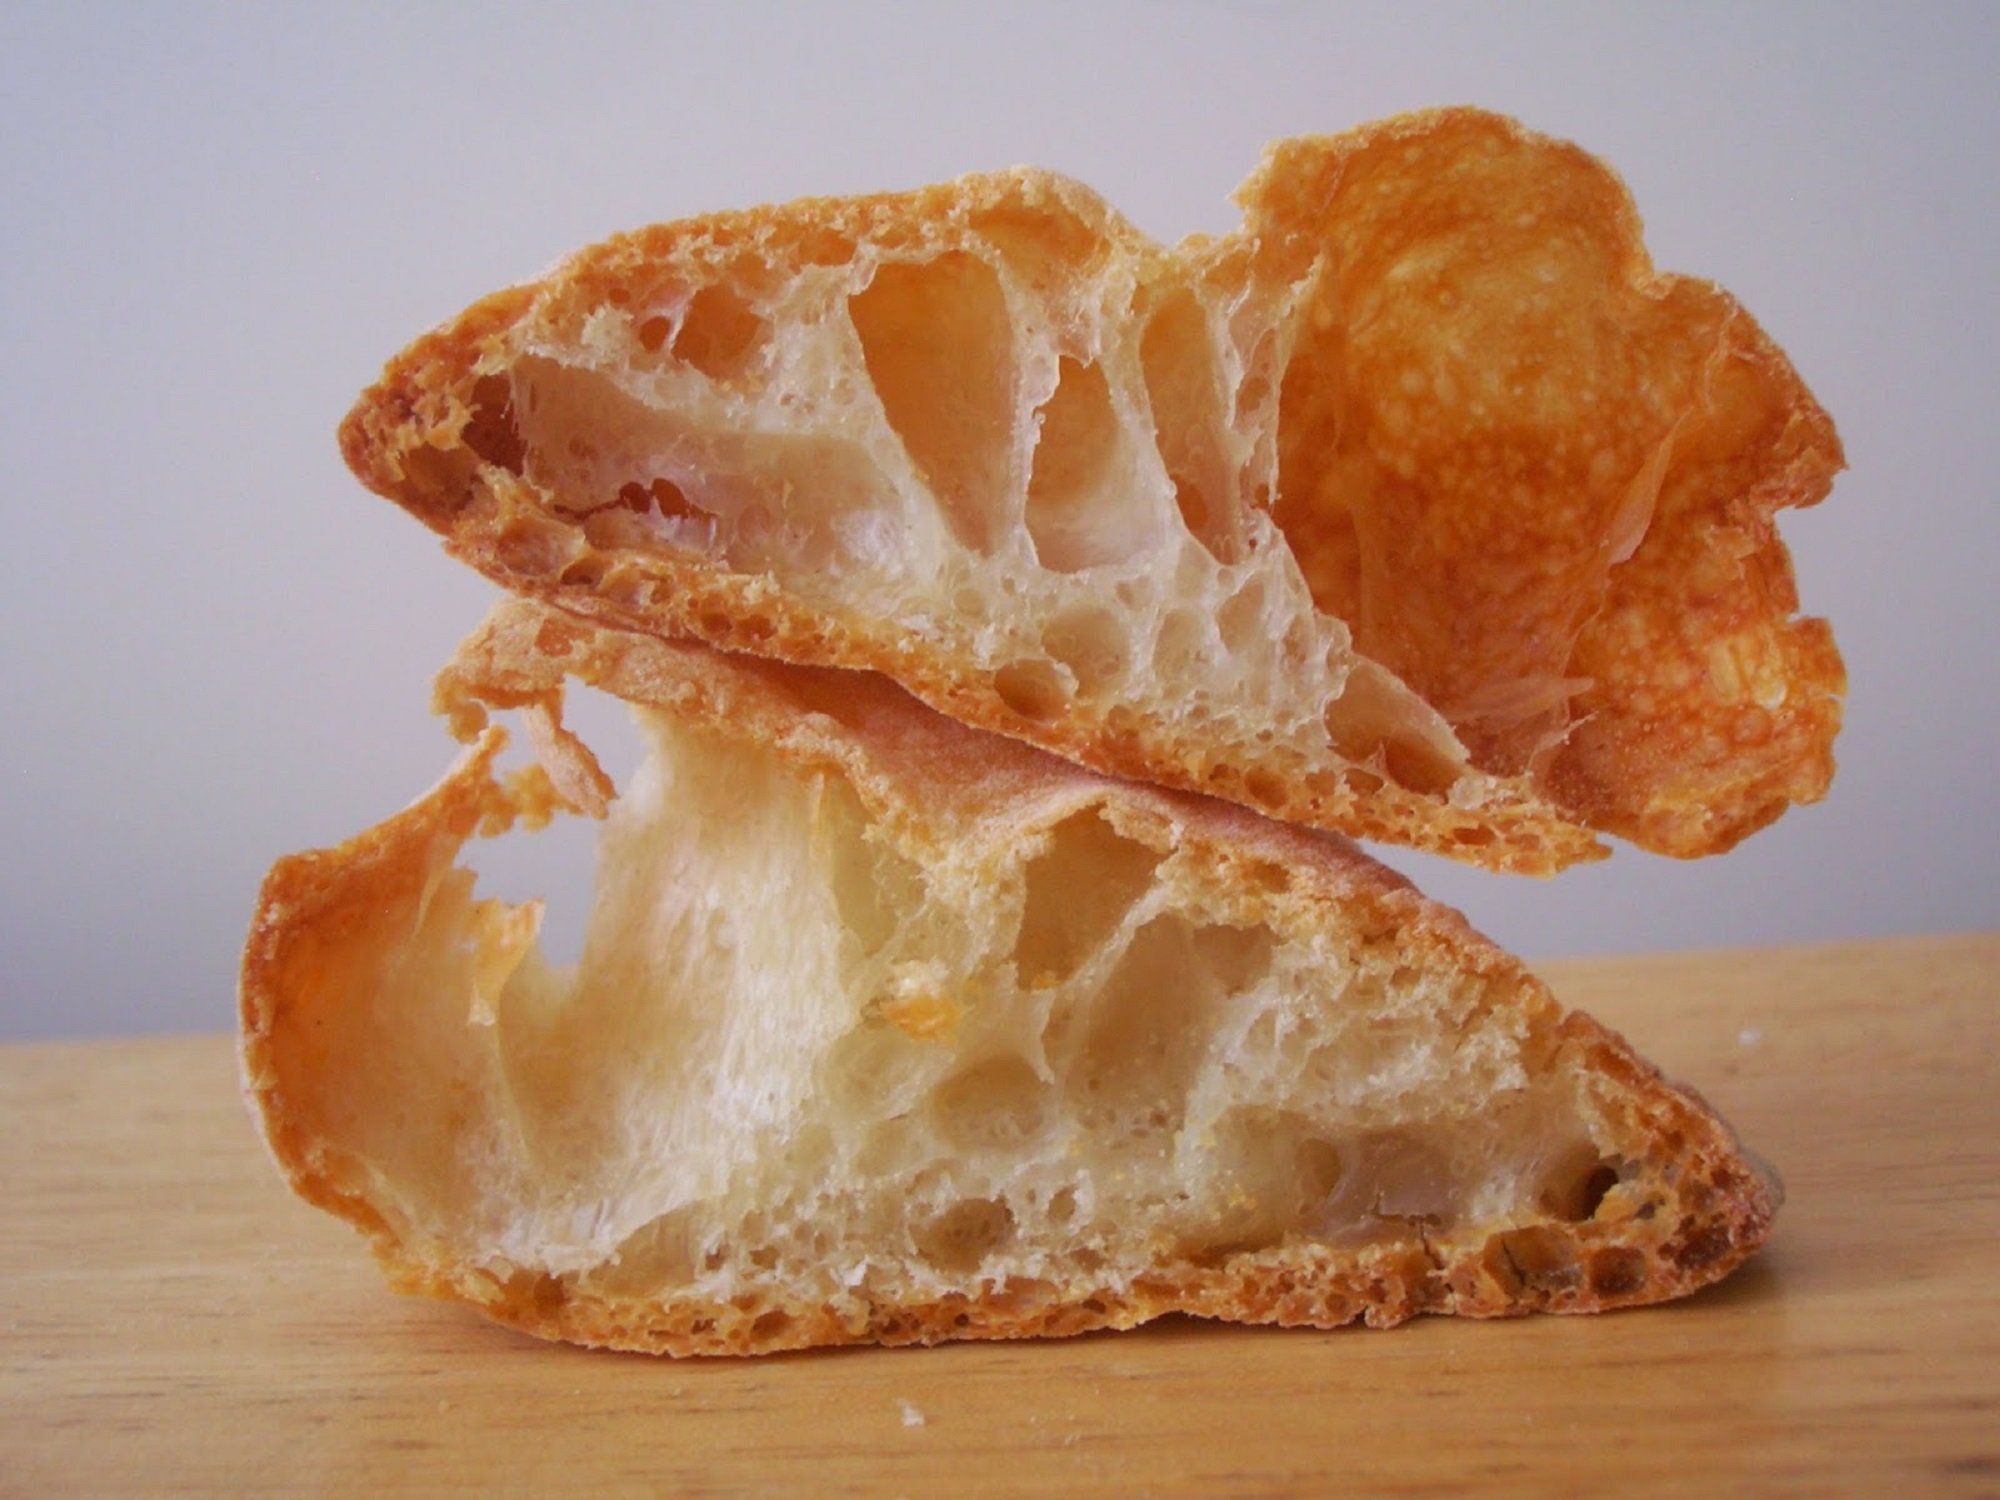 El pa fet a Barcelona que arrasa a Mercadona per menys de 50 cèntims